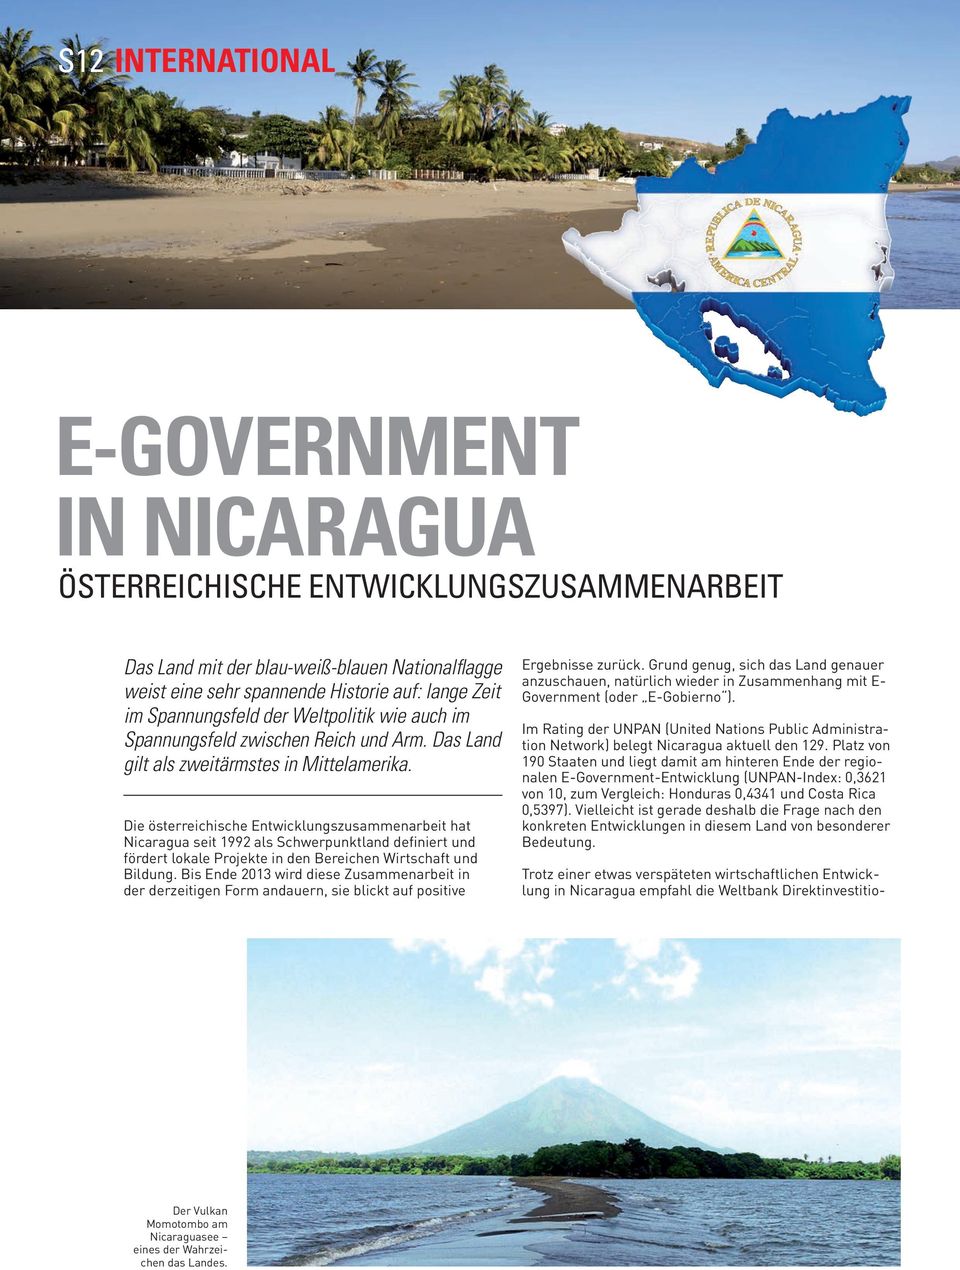 Die österreichische Entwicklungszusammenarbeit hat Nicaragua seit 1992 als Schwerpunktland definiert und fördert lokale Projekte in den Bereichen Wirtschaft und Bildung.